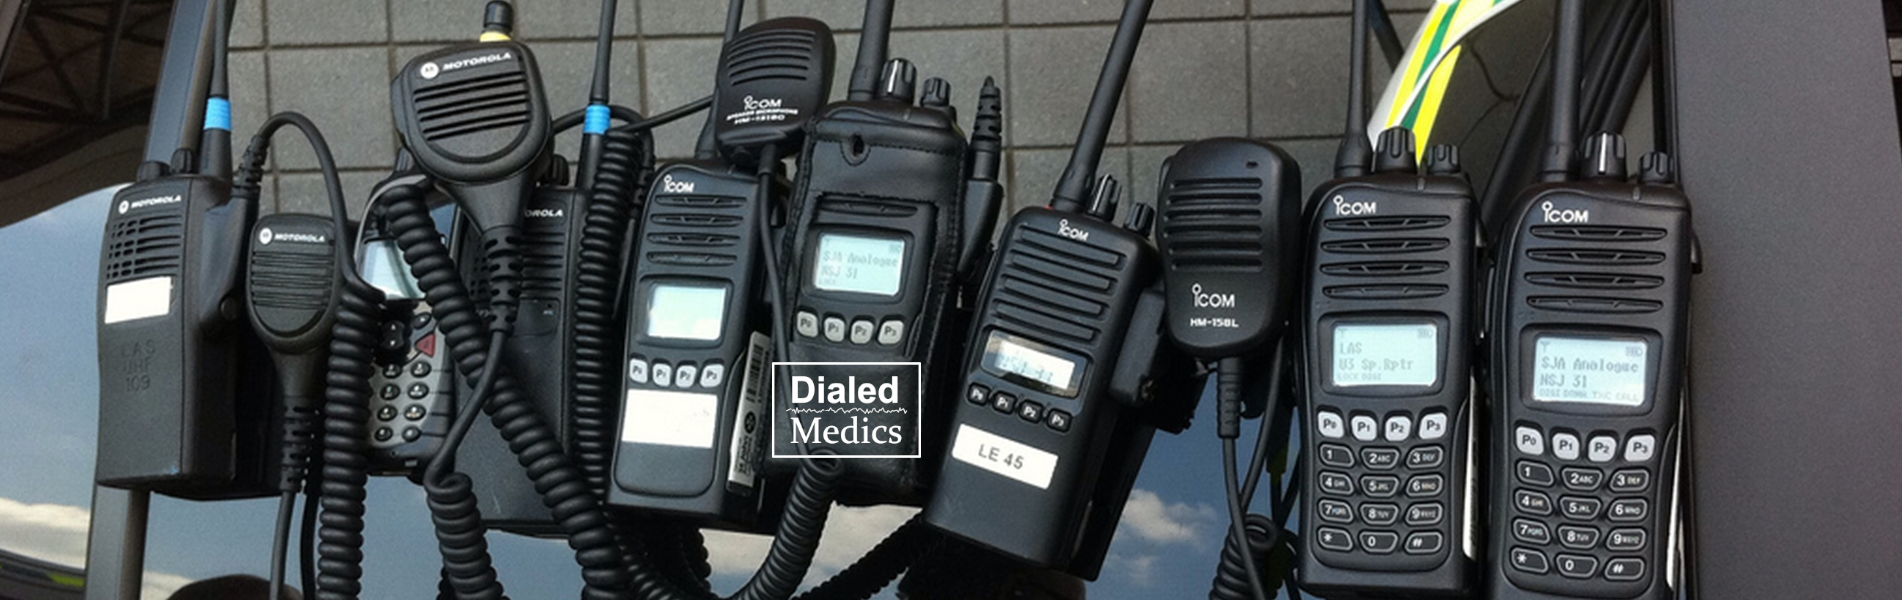 EMS radios.